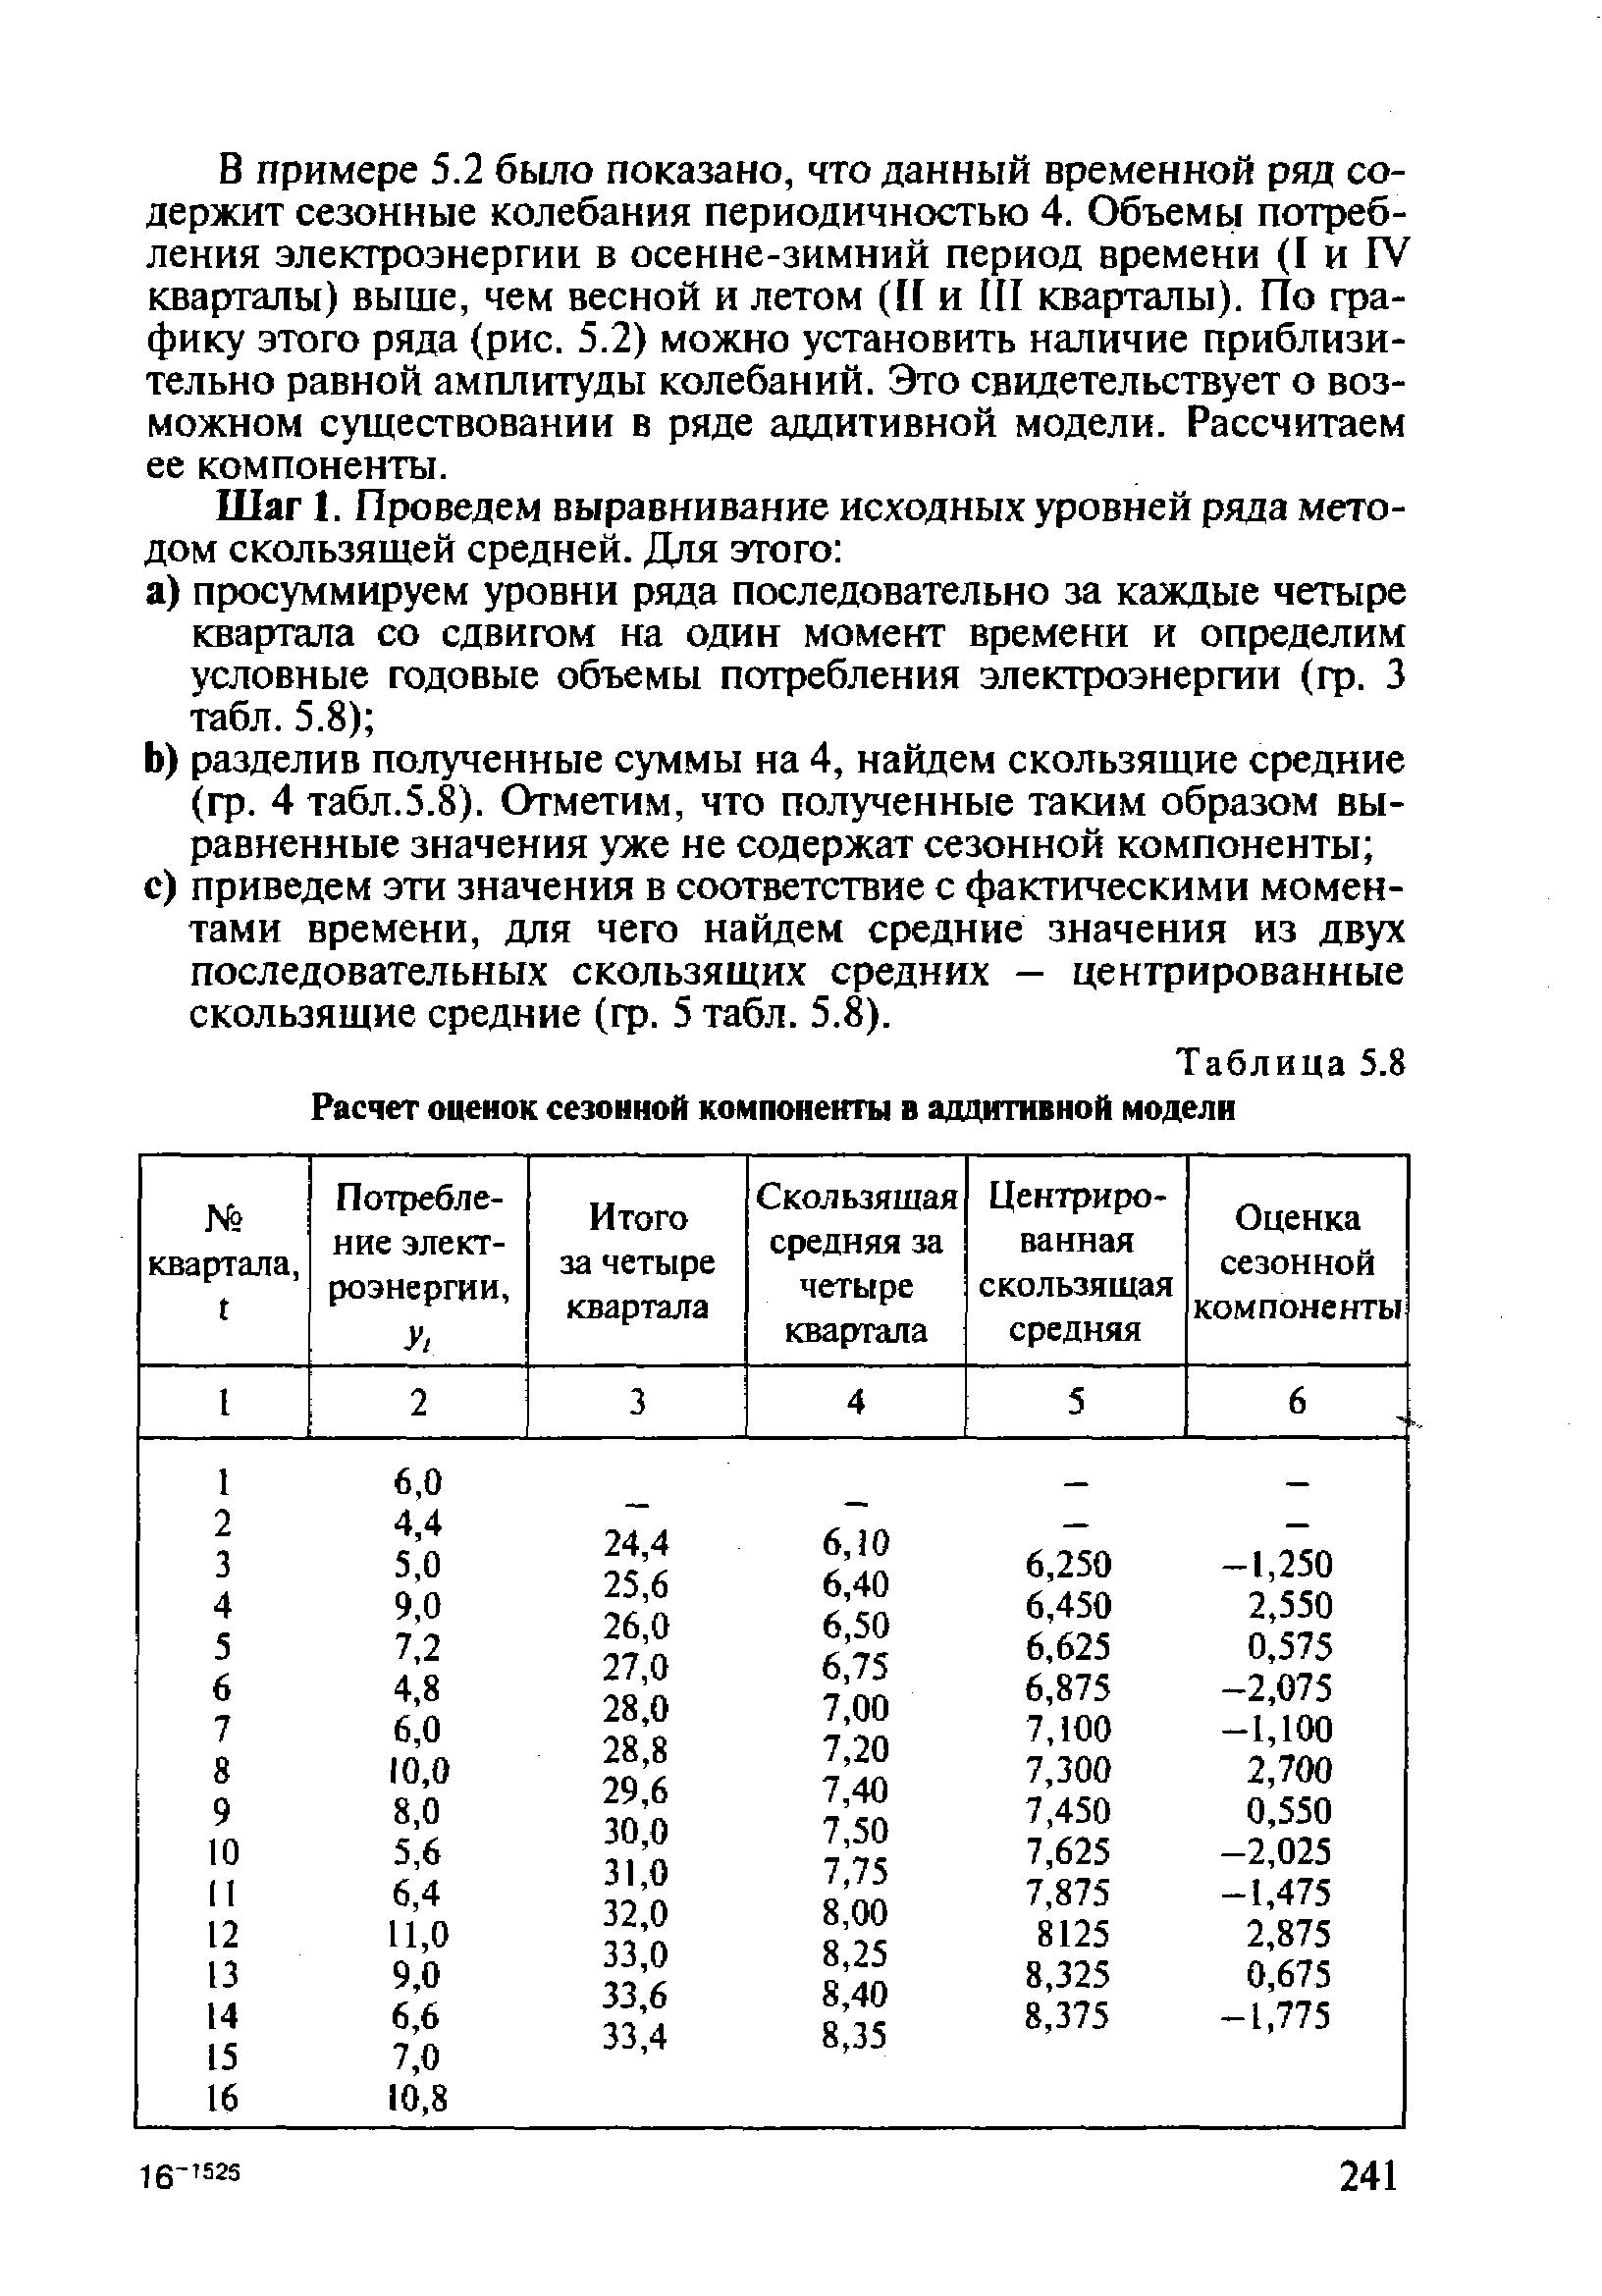 Таблица 5.8 Расчет оценок сезонной компоненты в аддитивной модели
